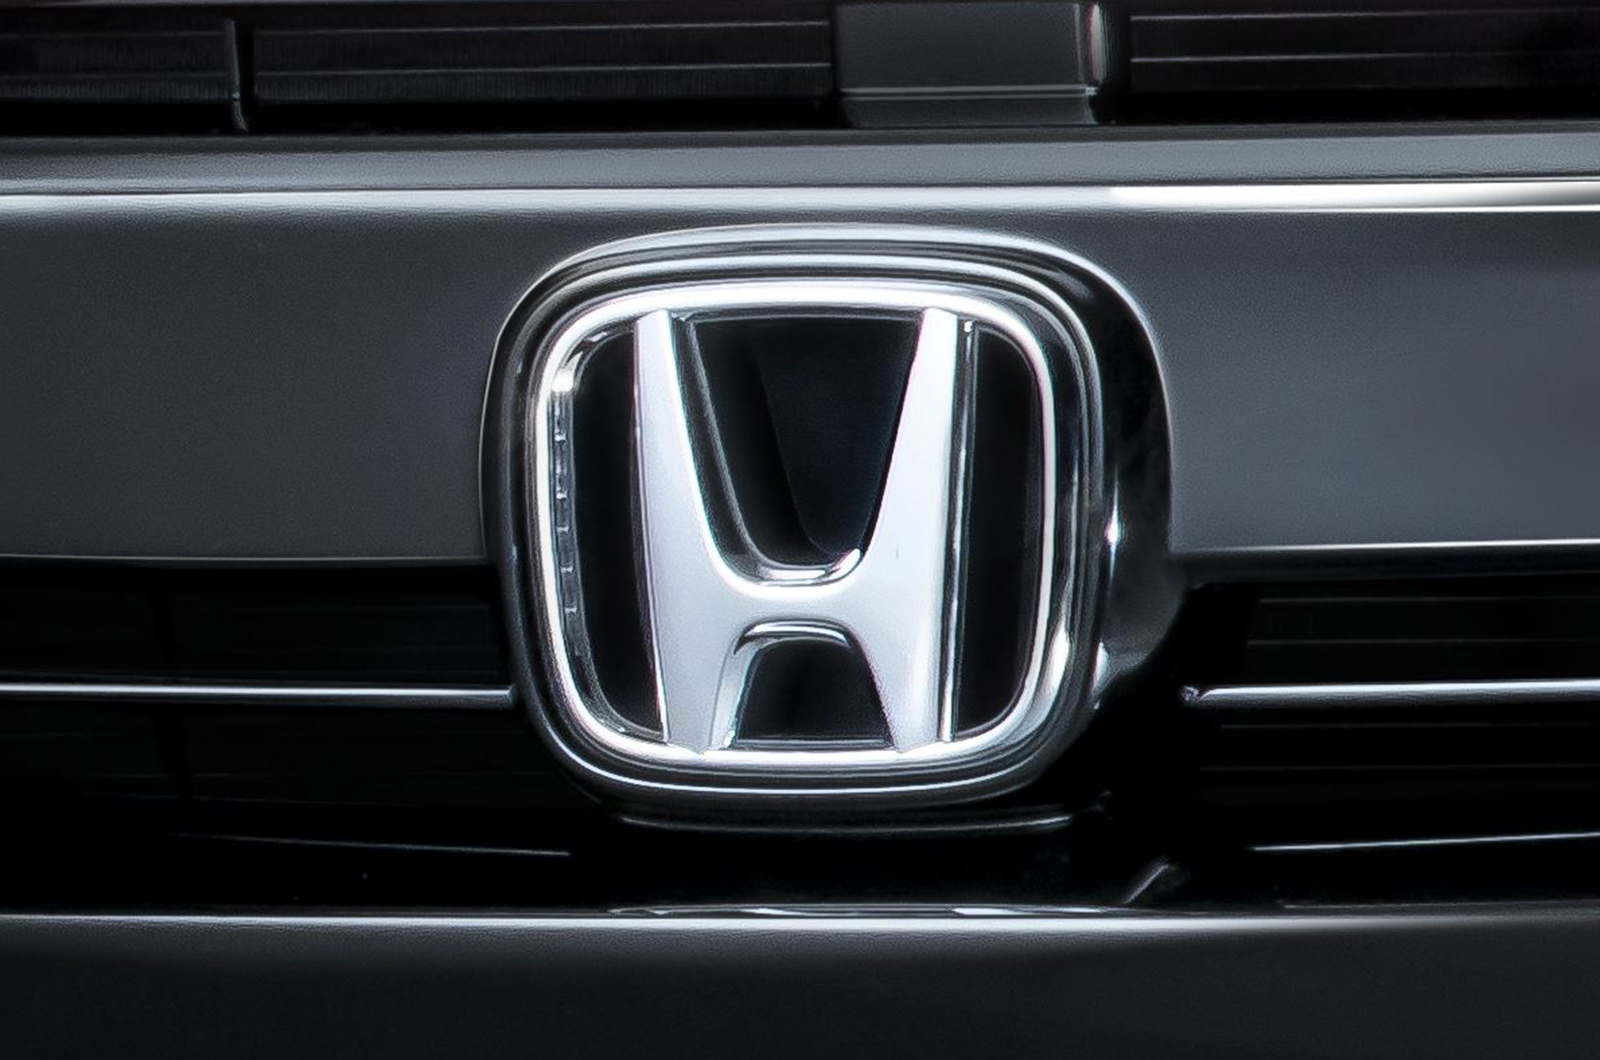 Завод Honda Japan закрывается на следующий день после кибератаки